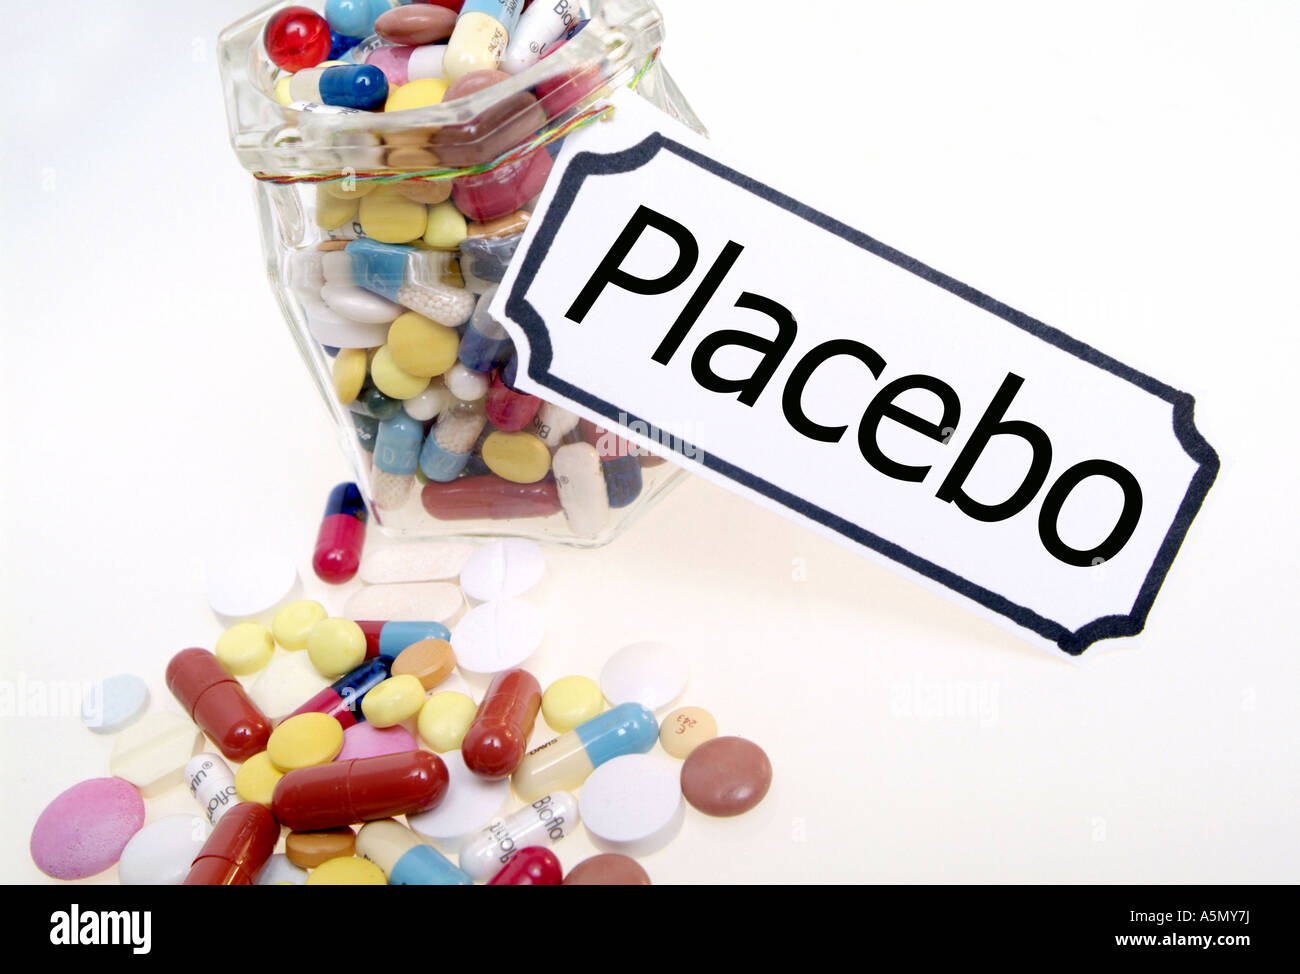 Scheinpräparate Symbolbild symbolique pour le placebo Placebo Medikament Medikamente Medizin Tabletten Comprimés Heilmittel Arznei Arznei Banque D'Images